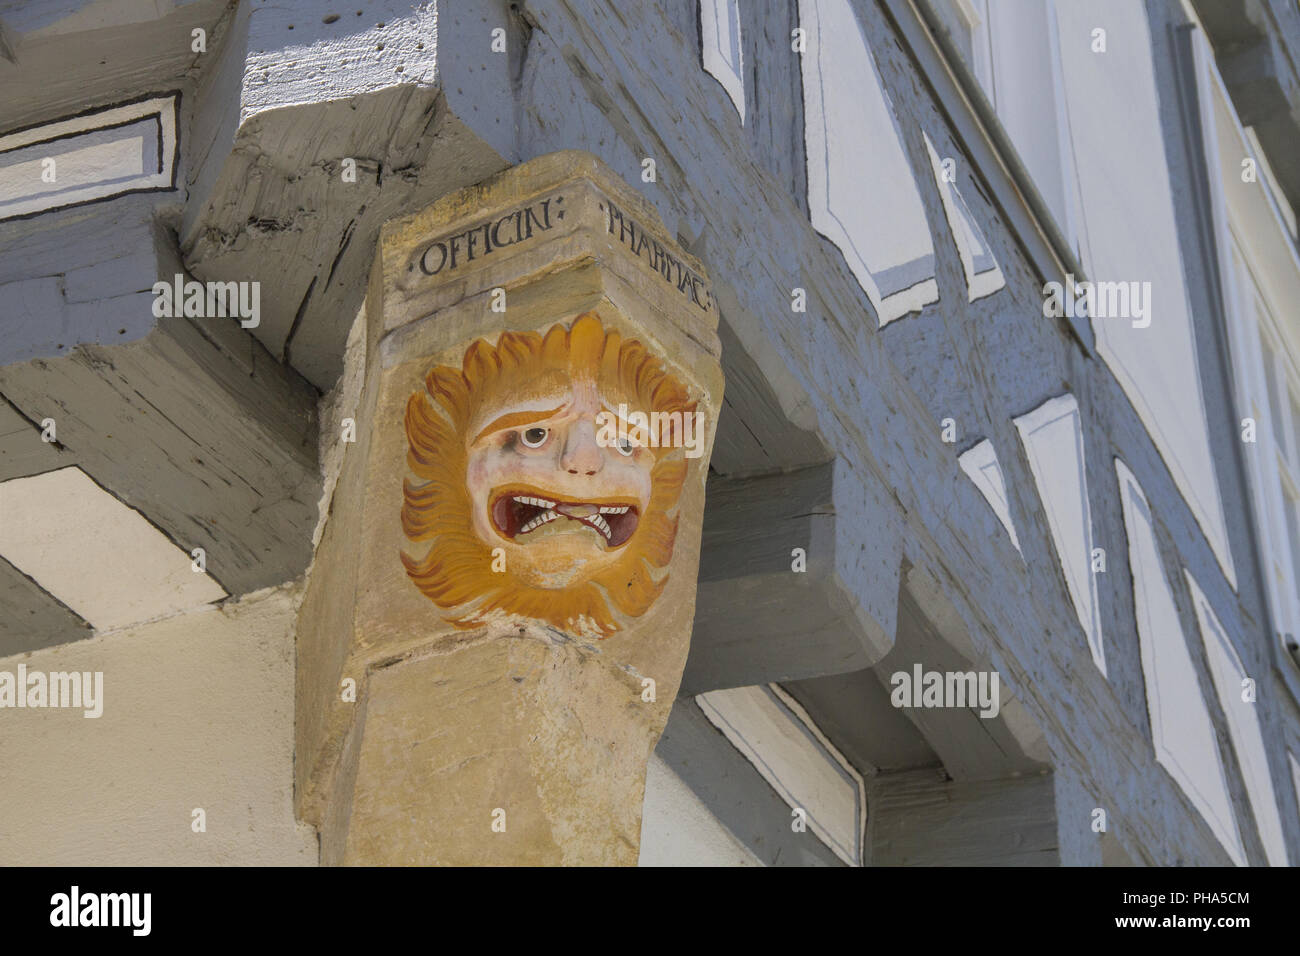 La figure grotesque dans la vieille-ville de Waiblingen, Allemagne Banque D'Images